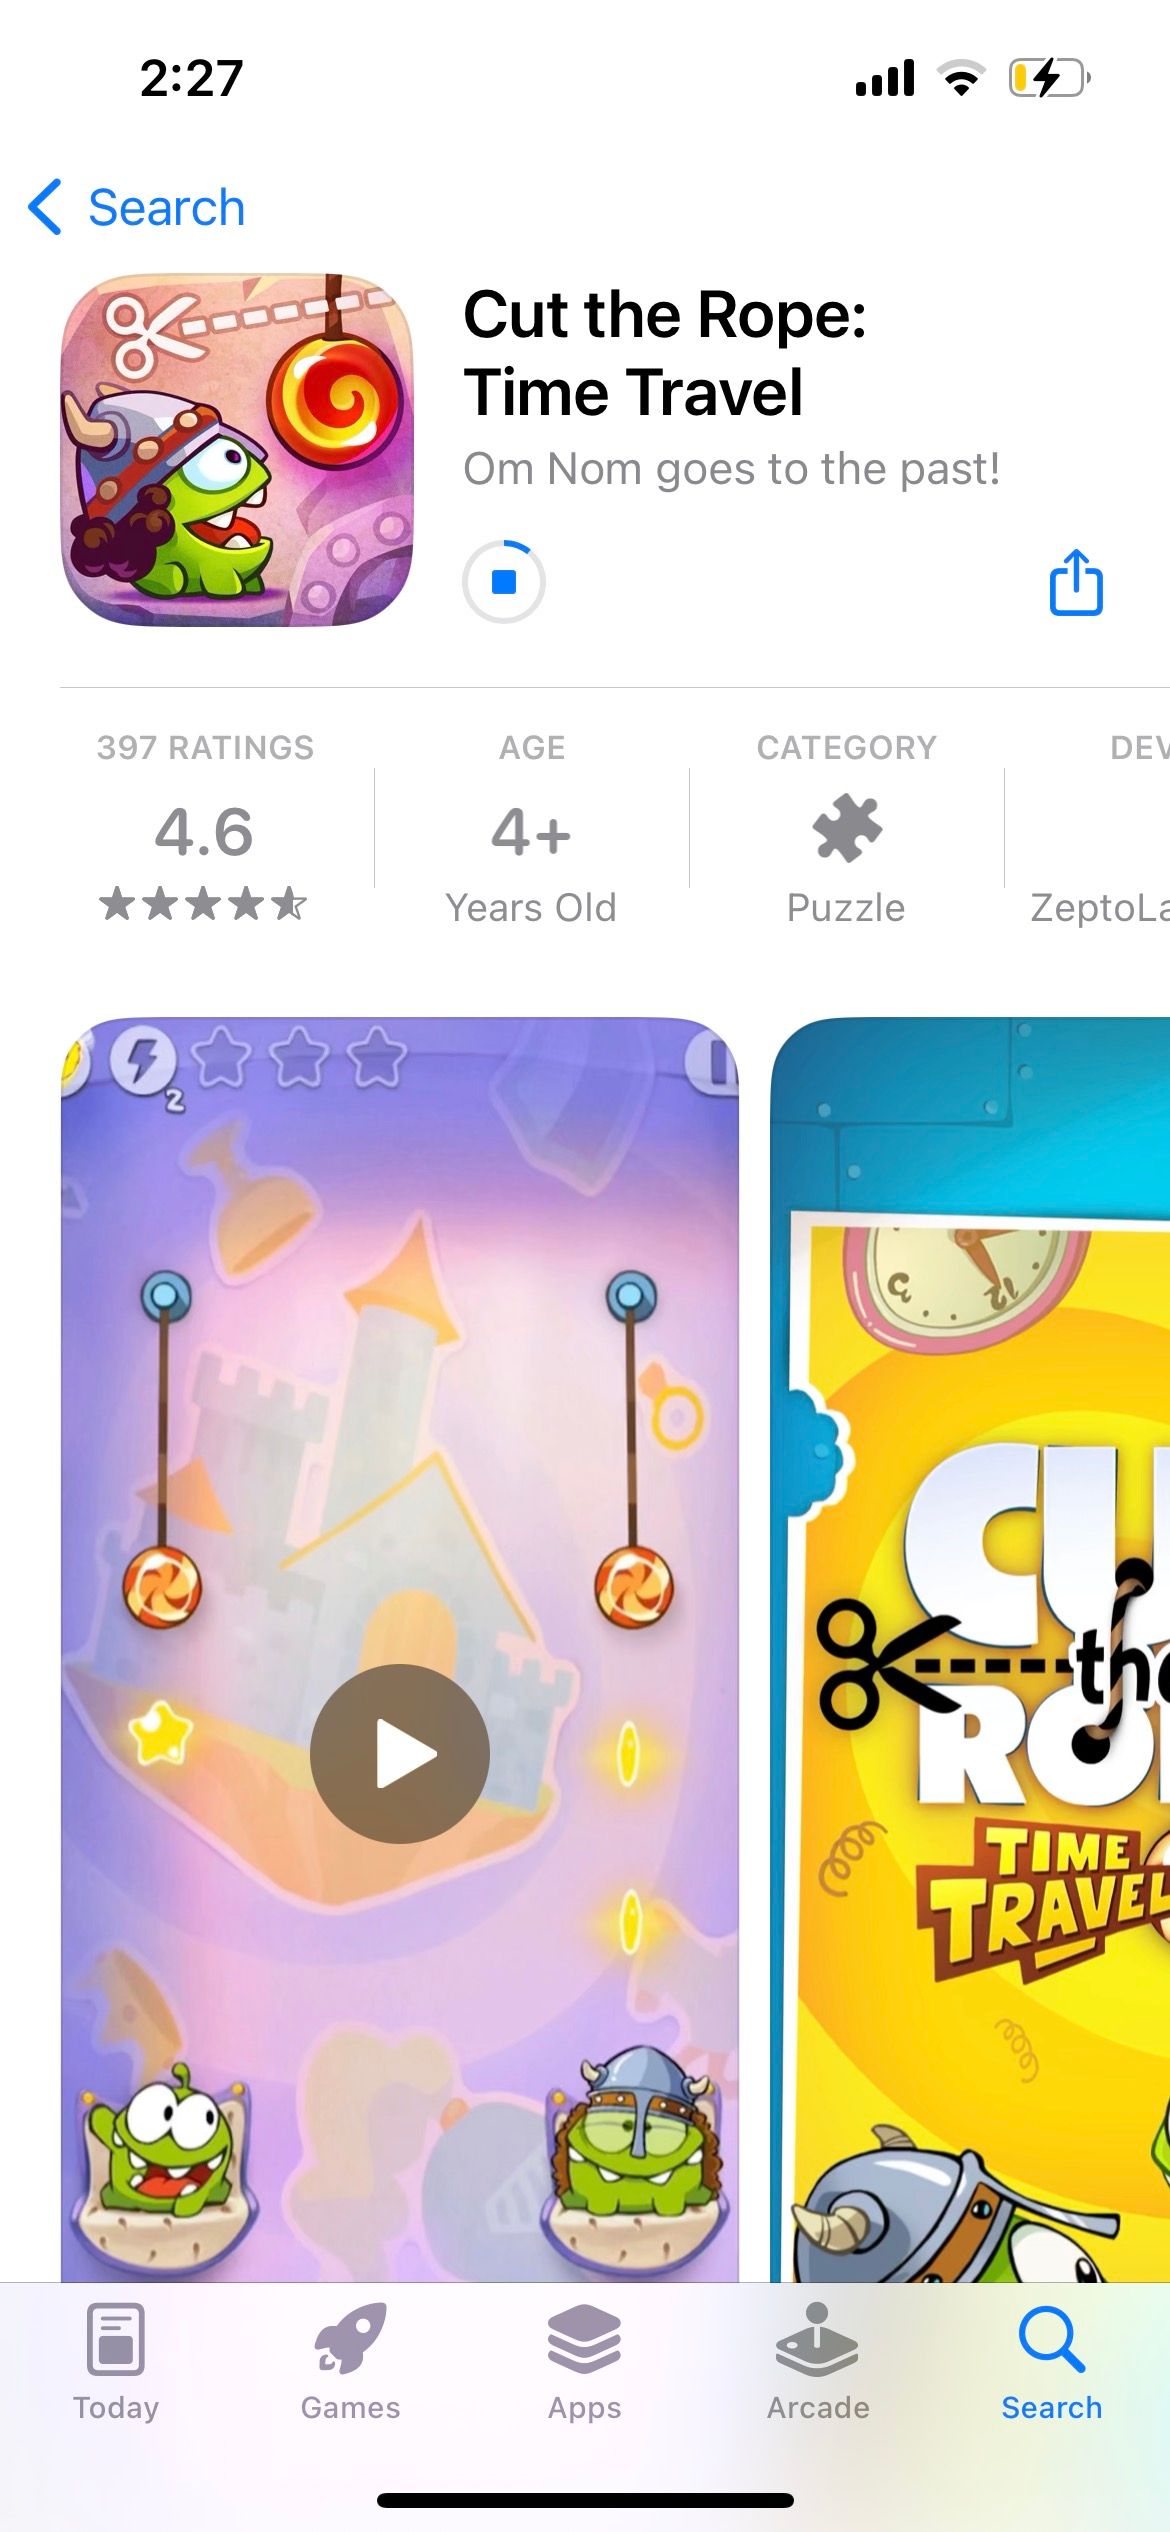 app download progress in iphone app store